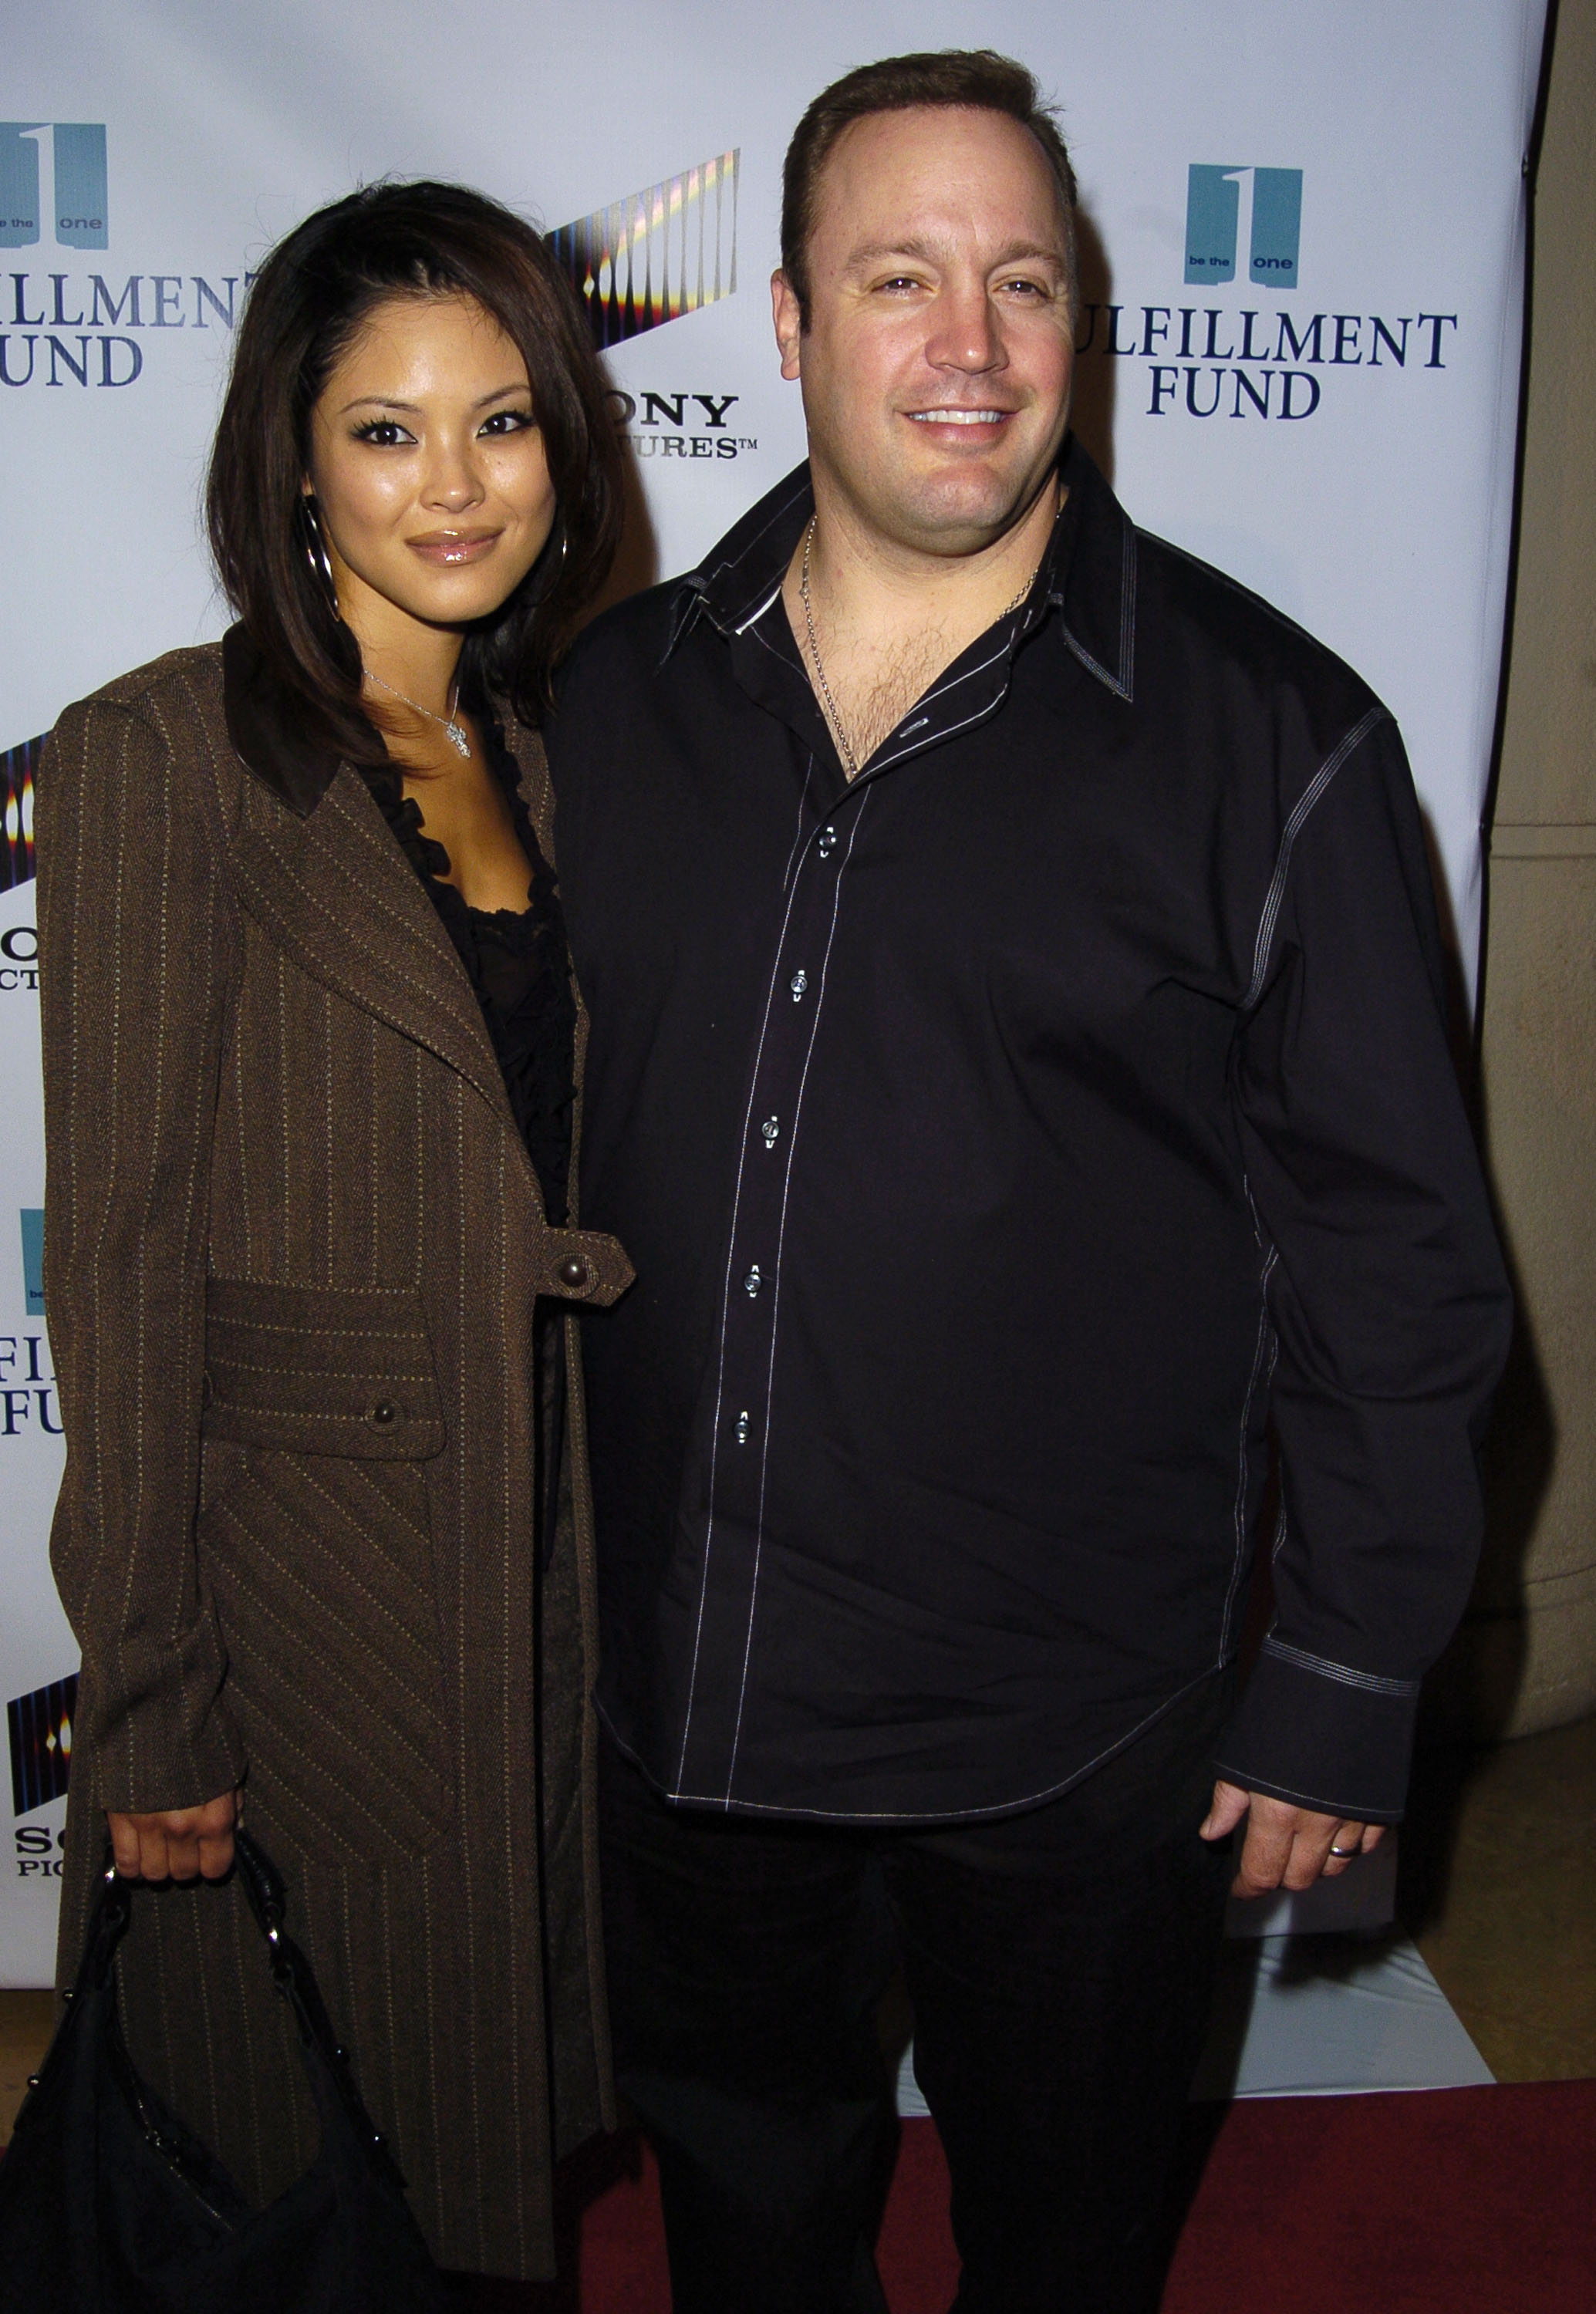 Kevin James et Steffiana De La Cruz au Fulfillment Fund en l'honneur d'Amy Pascal de Sony lors d'un gala de bienfaisance en 2004 à Beverly Hills | Source : Getty Images